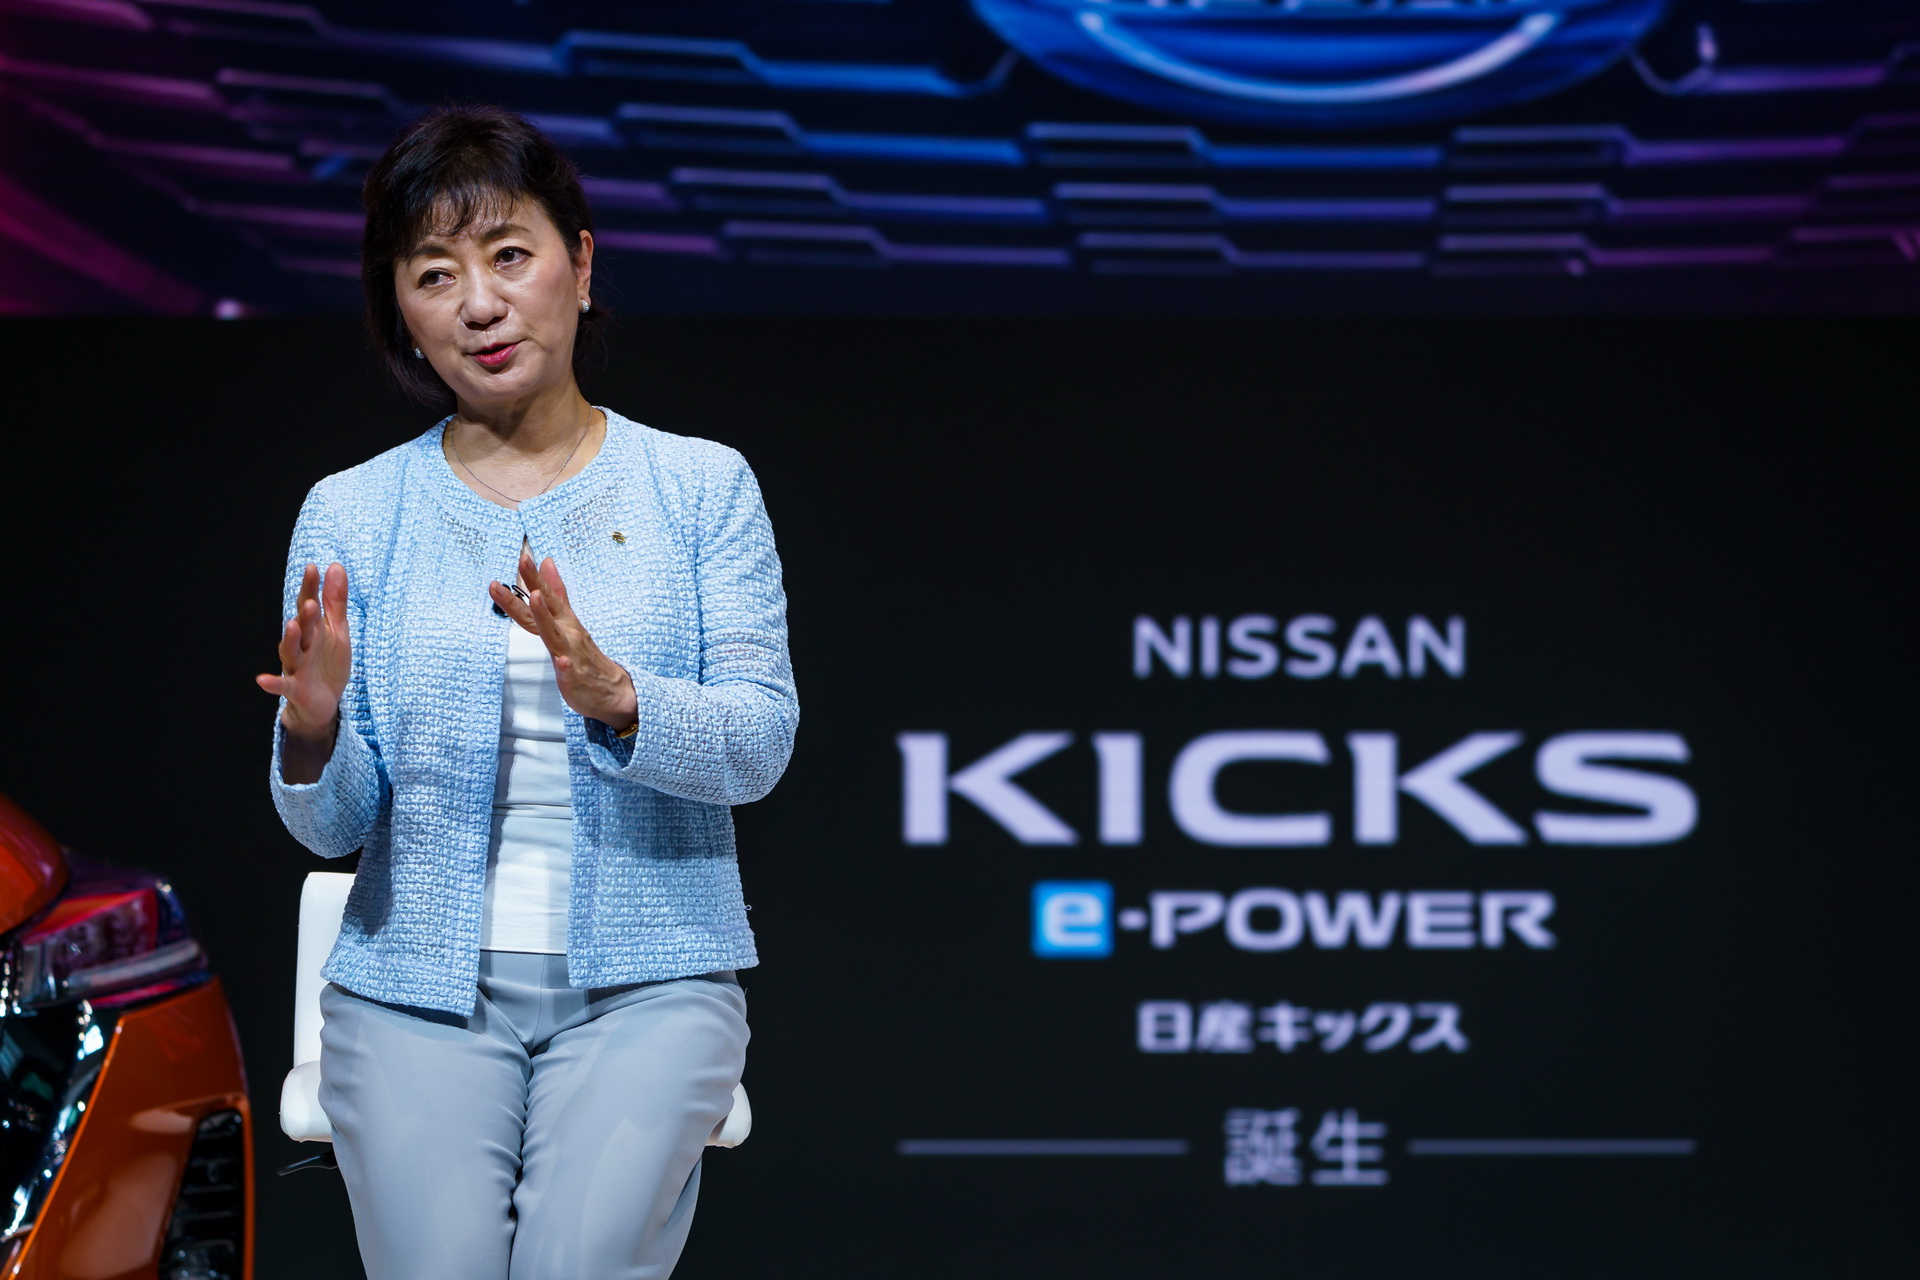 نيسان كيكس 2021 تدشن في اليابان "صور وتفاصيل جديدة" 115